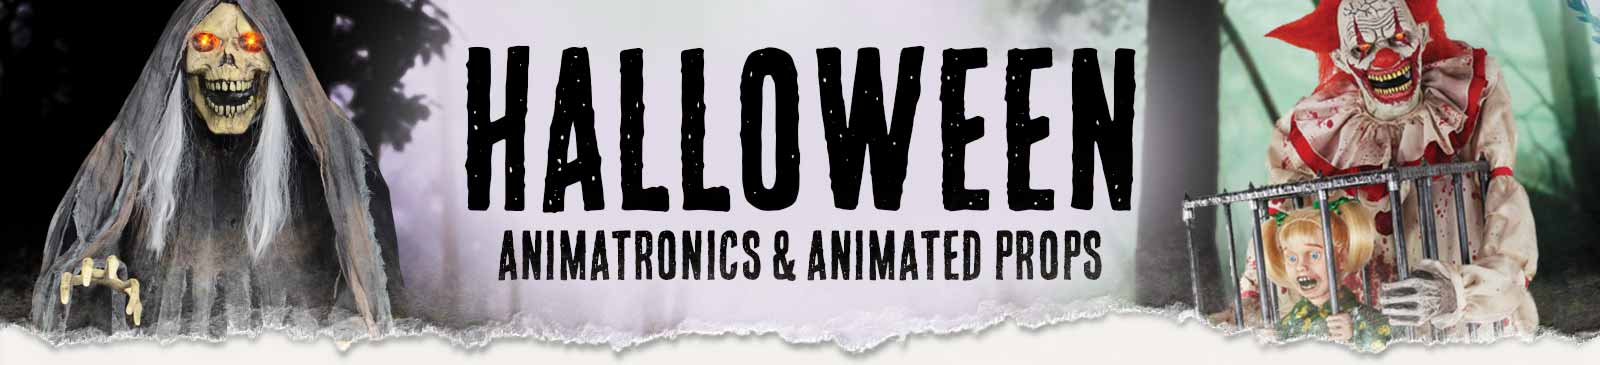 Halloween Animatronics & Animated Props